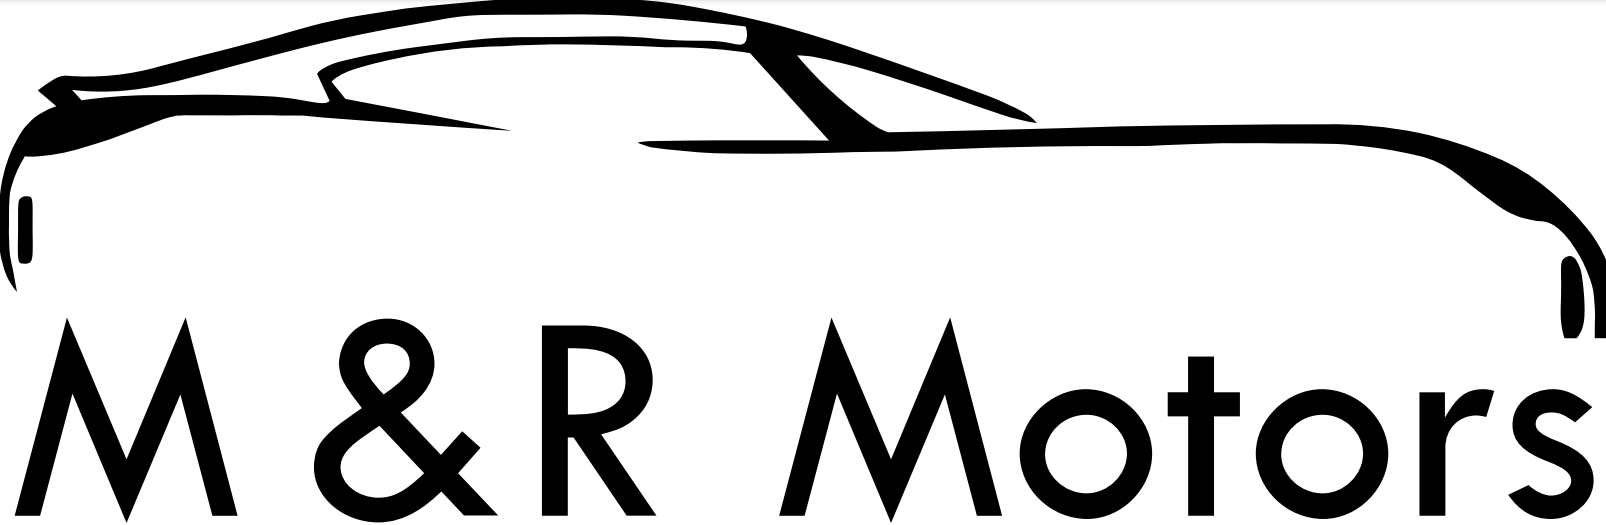 M&R Motors